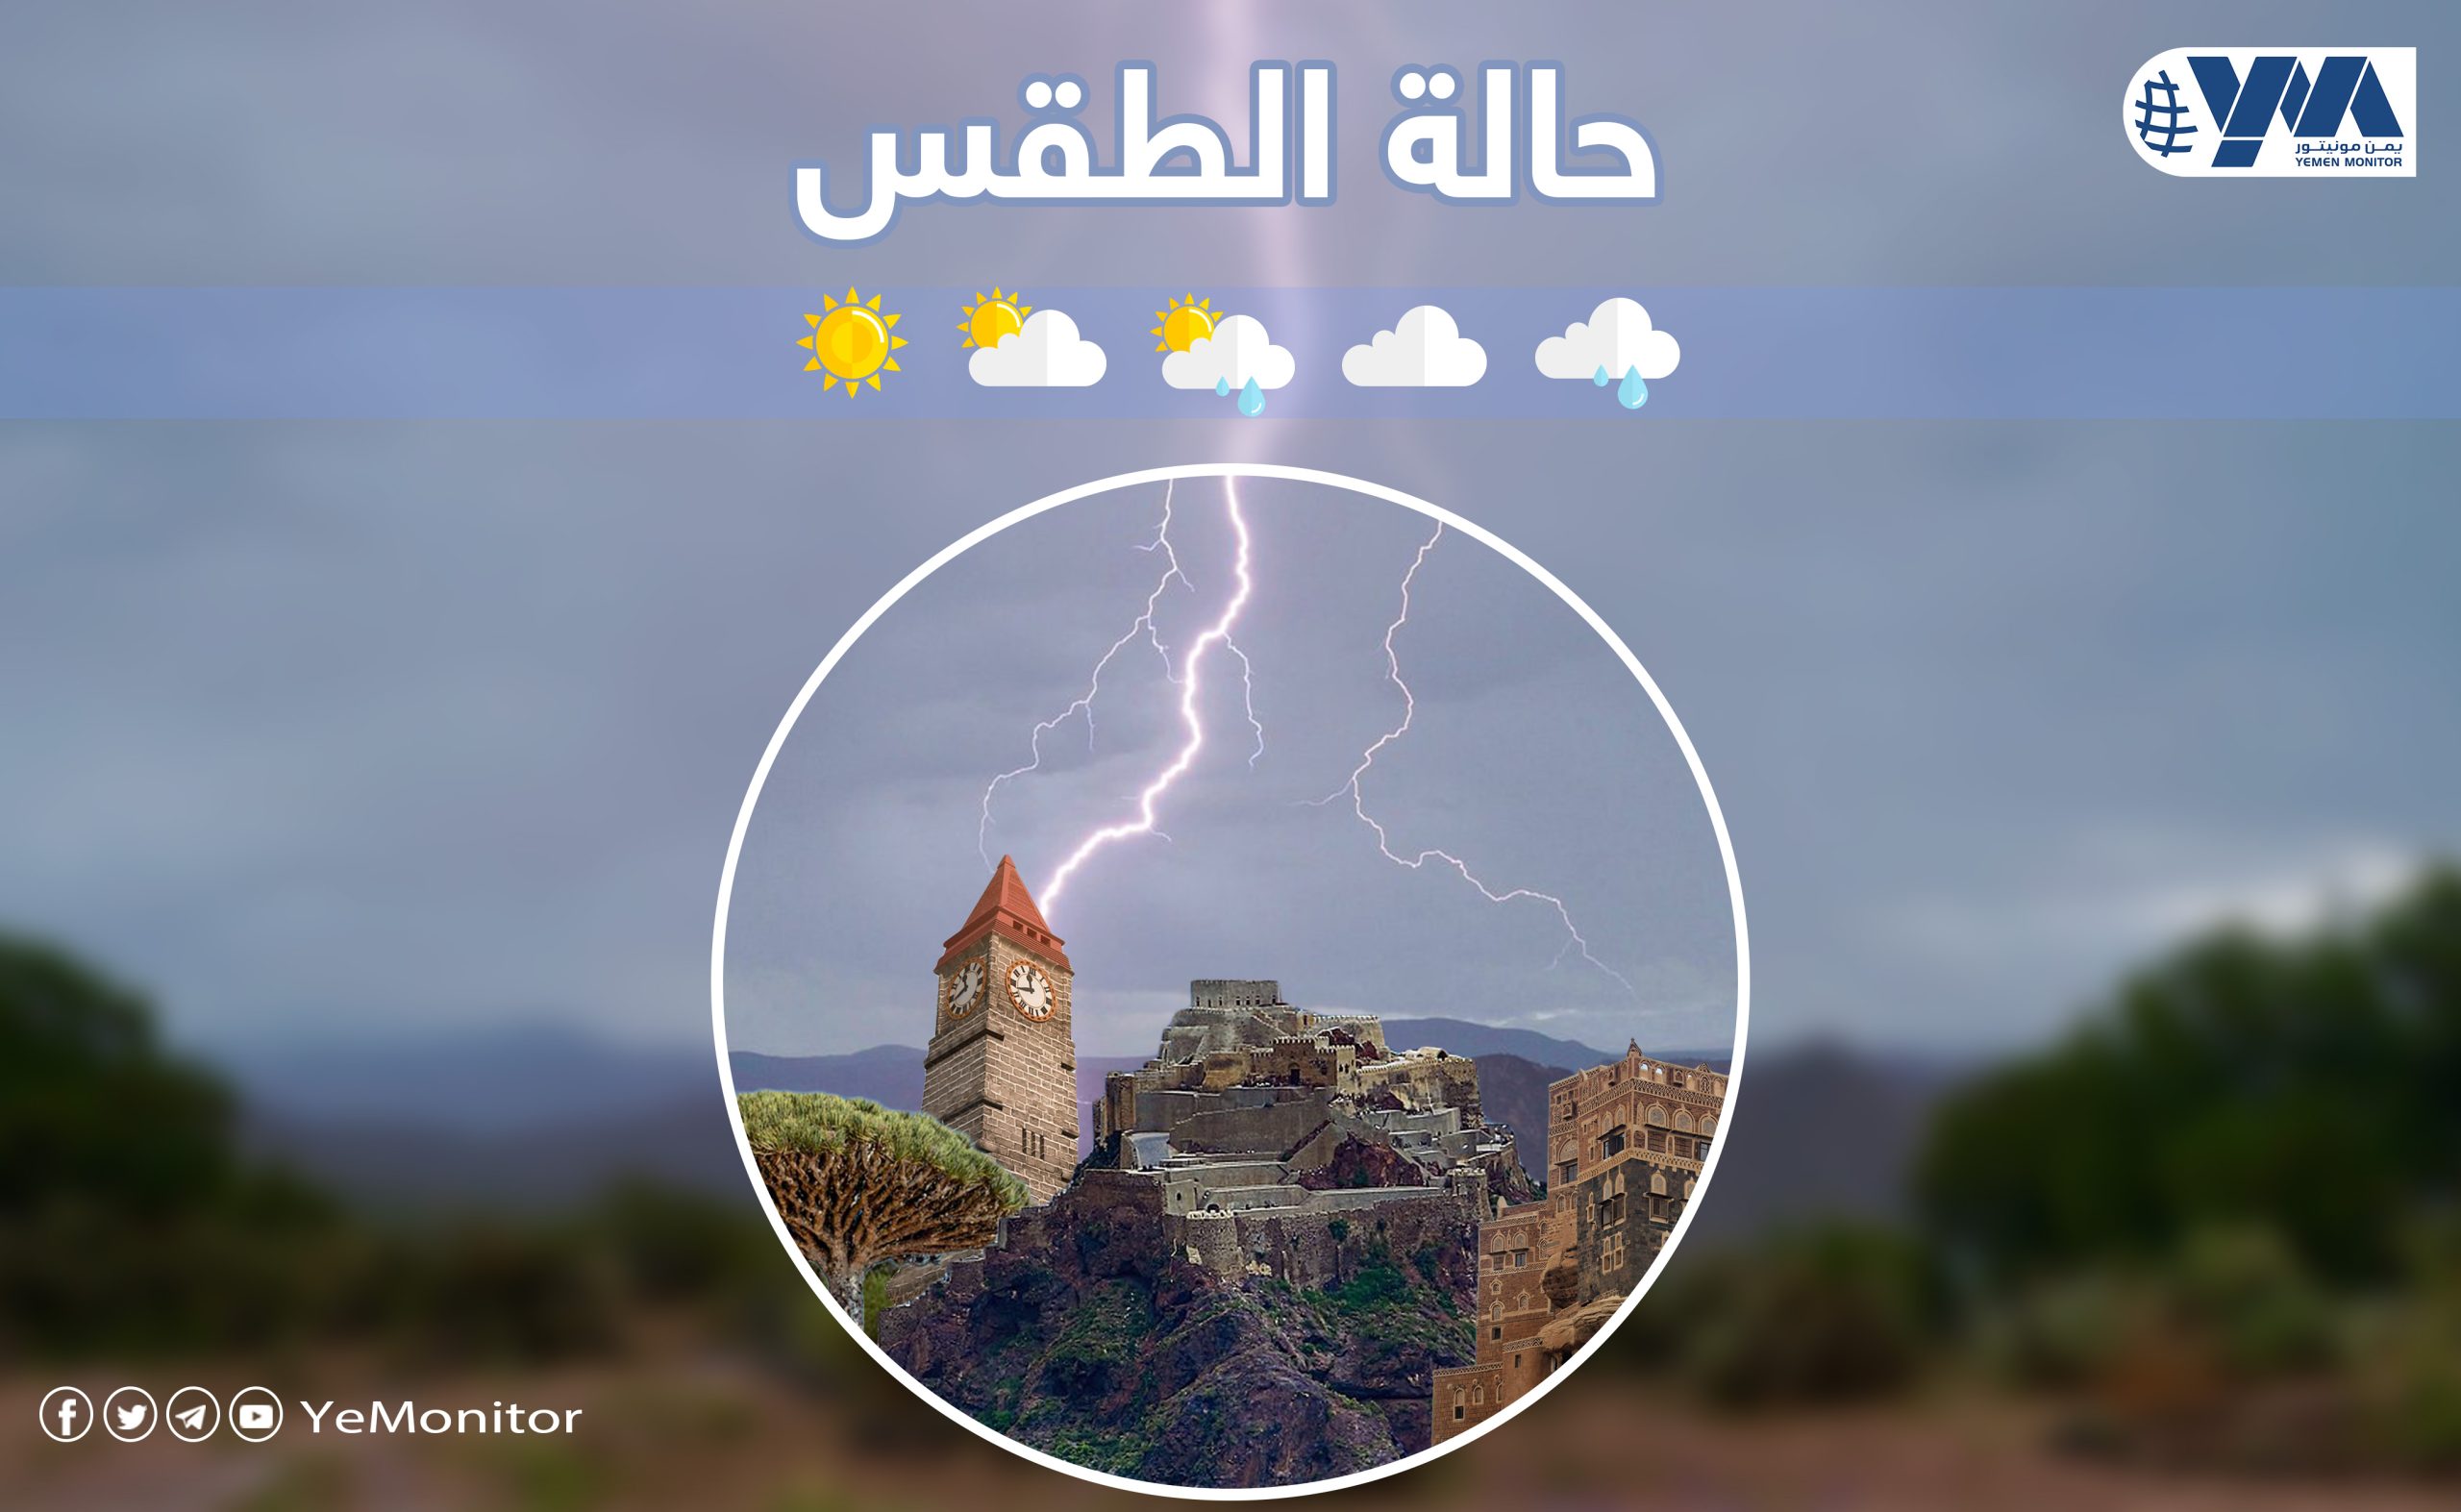 “الأرصاد اليمني”: طقس بارد مع احتمال هطول أمطار متفاوتة الشدة